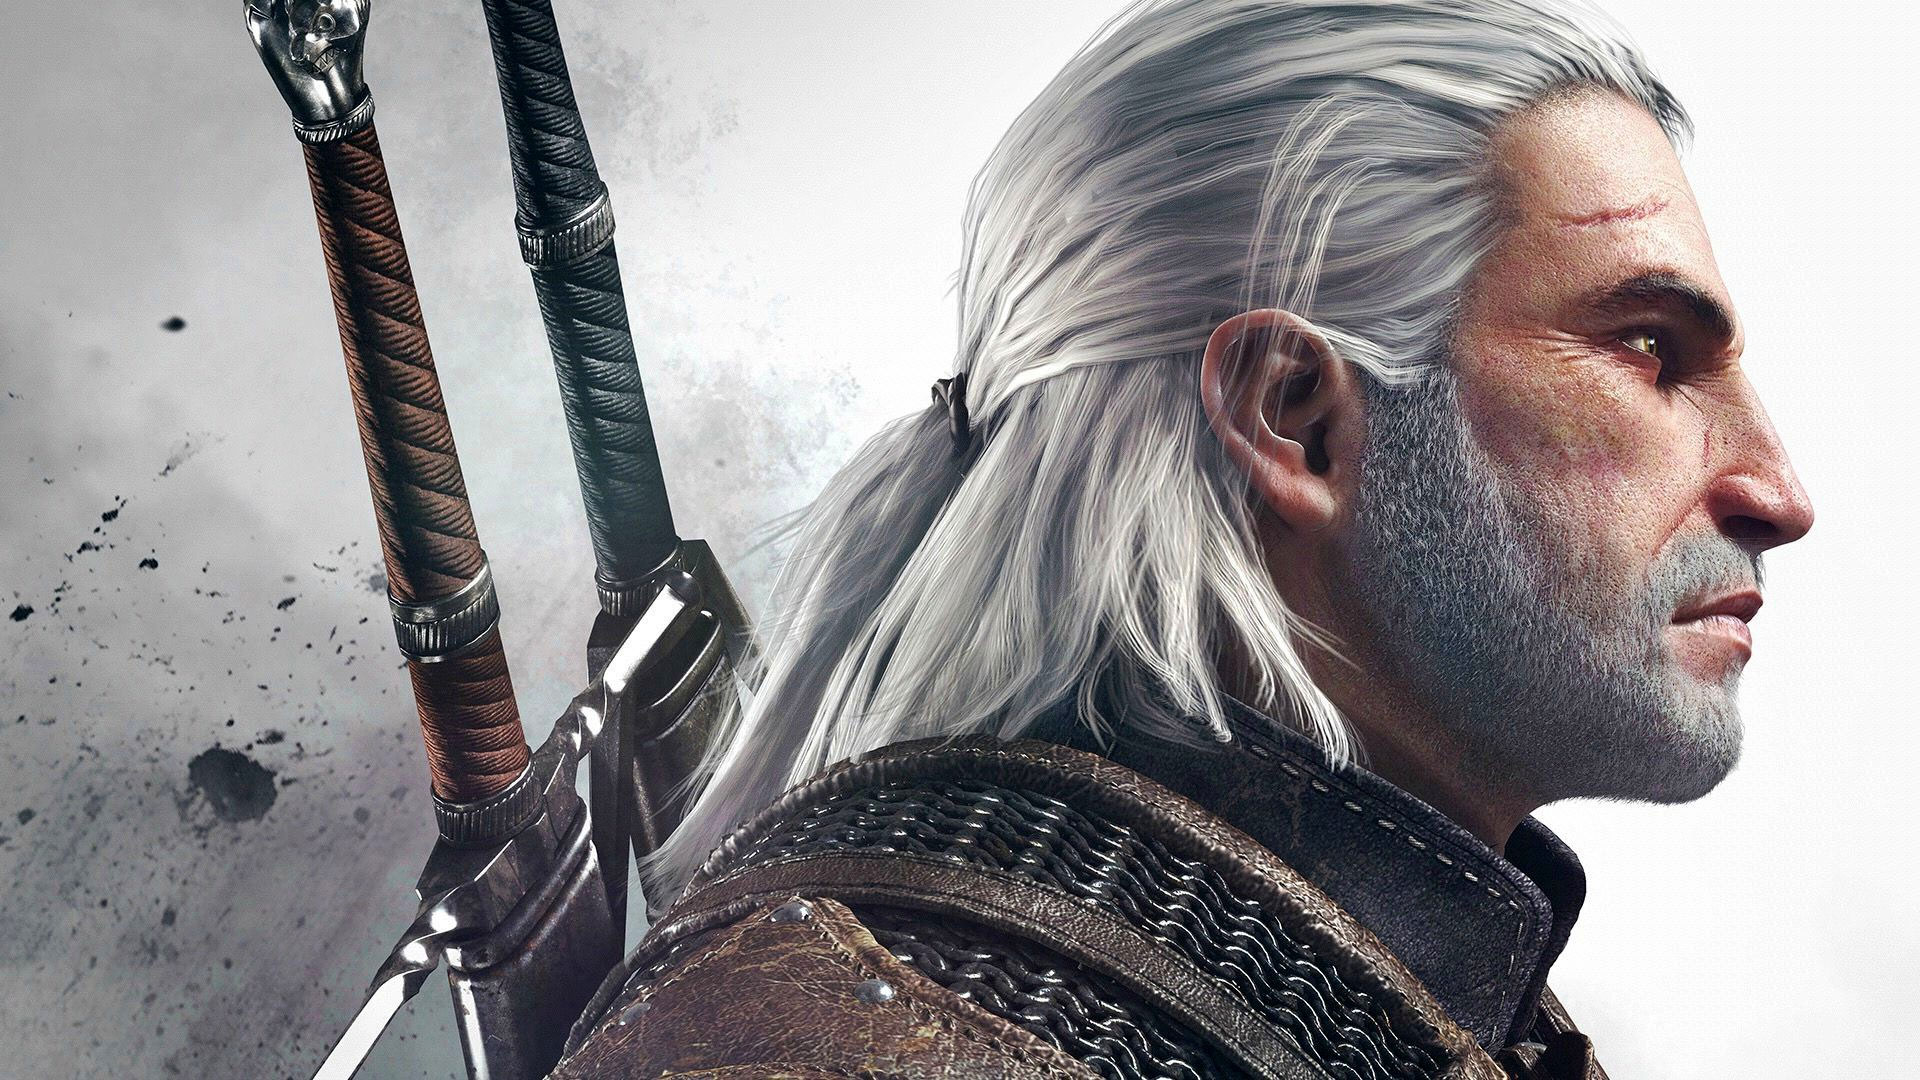 Wiedźmin 3: Dziki Gon – pomożecie Geraltowi zdobyć kolejną nagrodę?